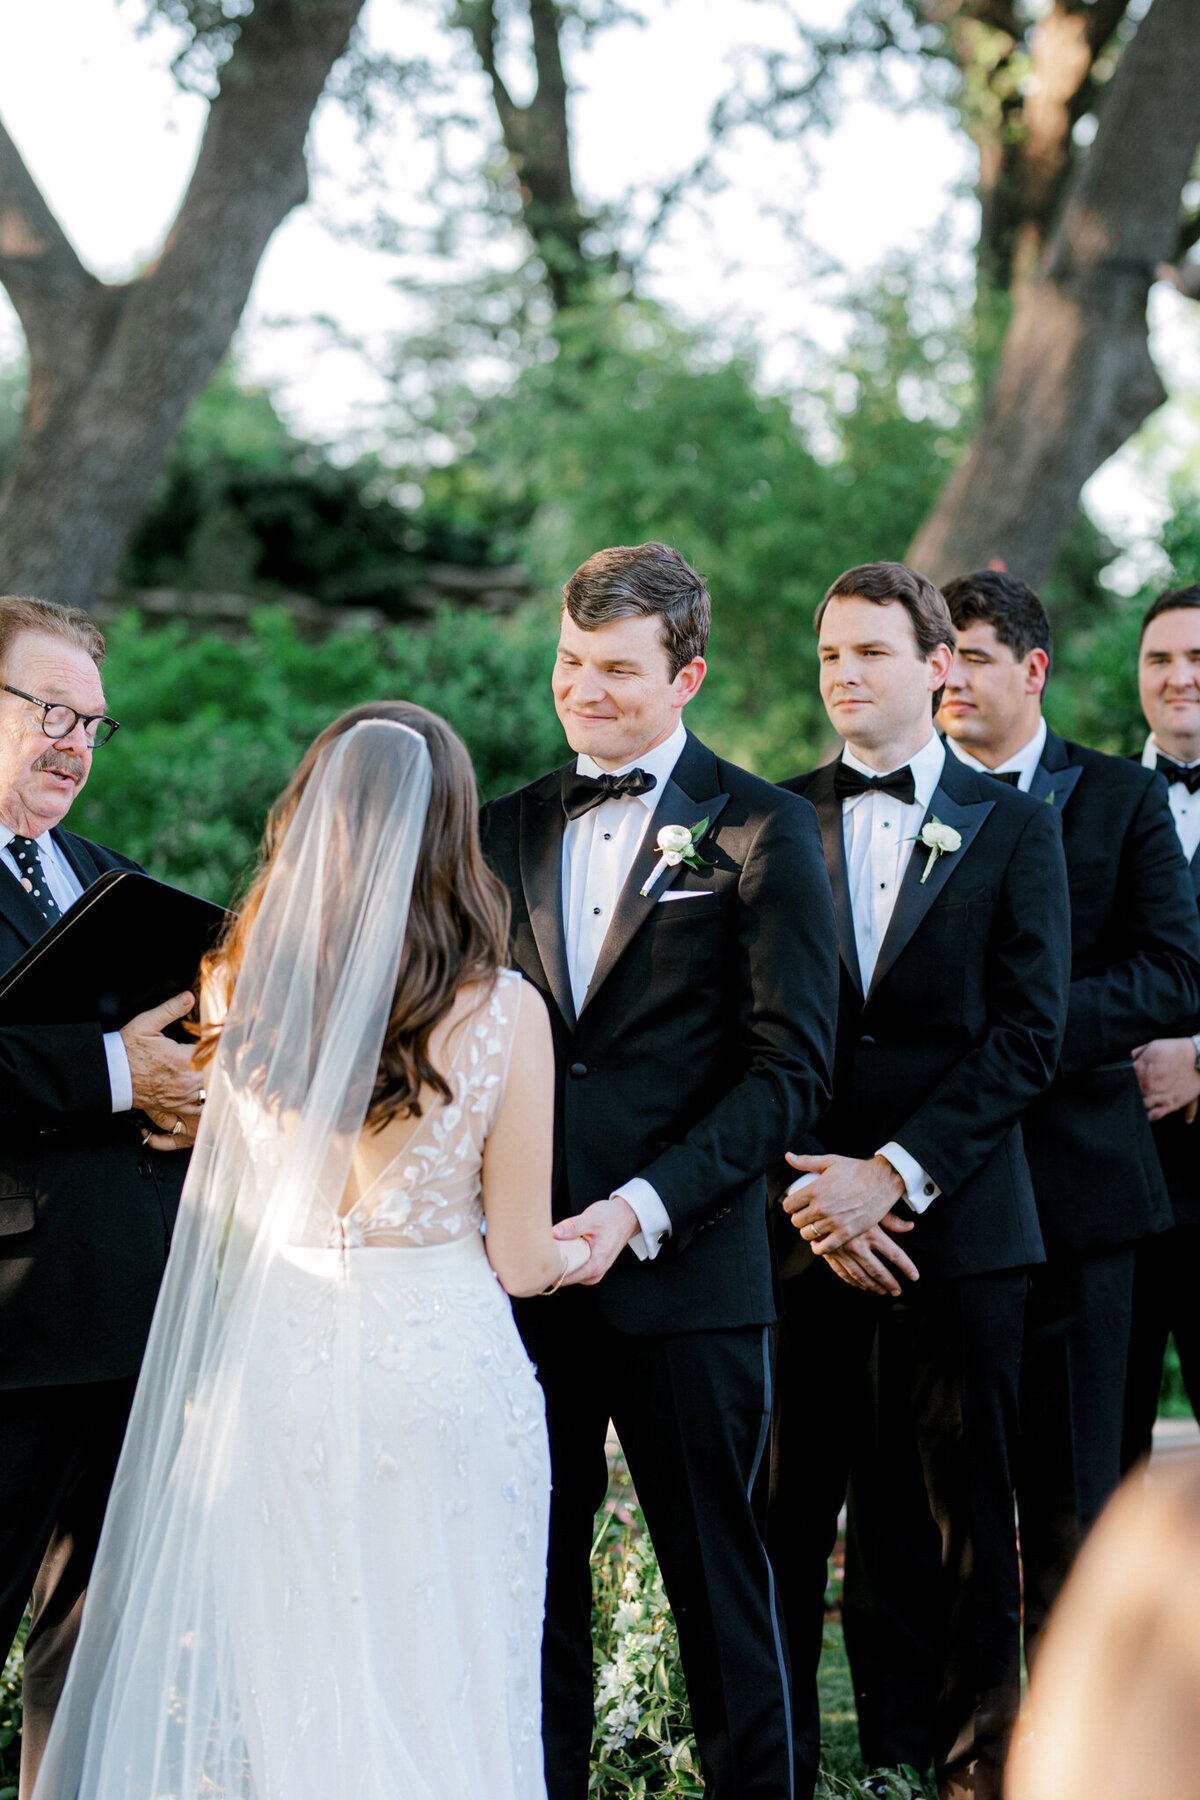 Gena & Matt's Wedding at the Dallas Arboretum | Dallas Wedding Photographer | Sami Kathryn Photography-141